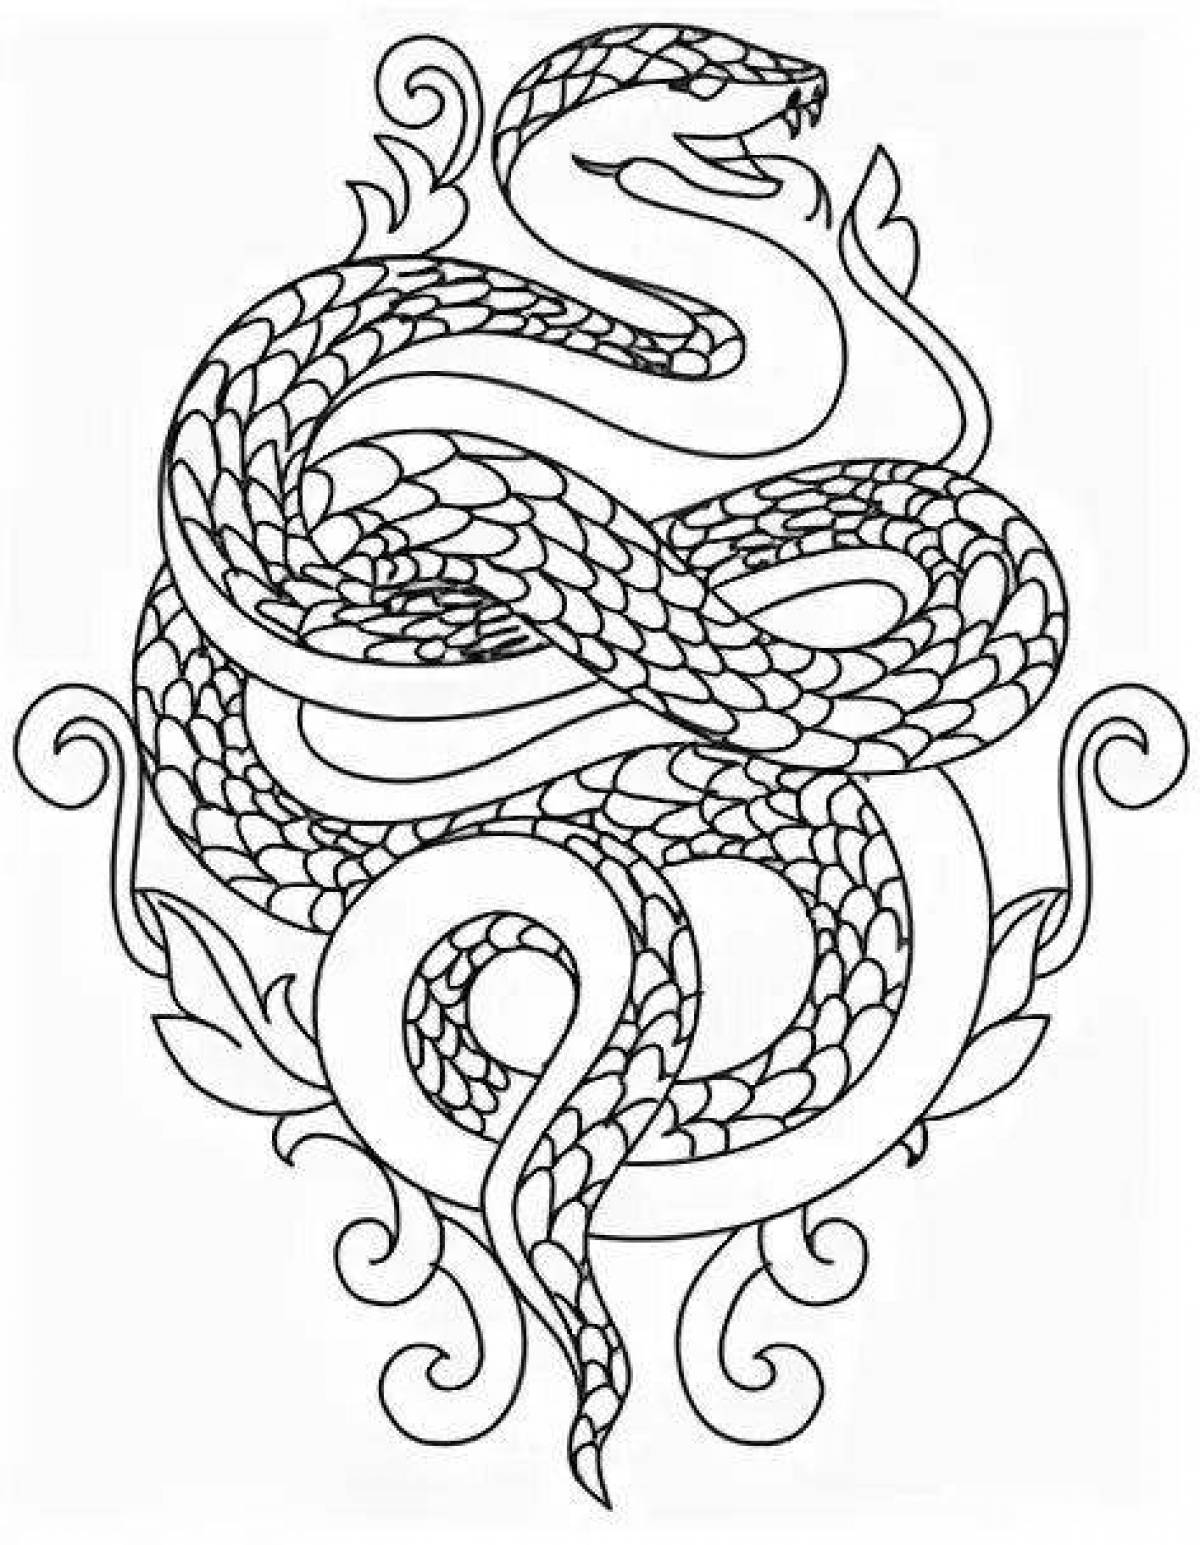 Волшебная раскраска змея антистресс